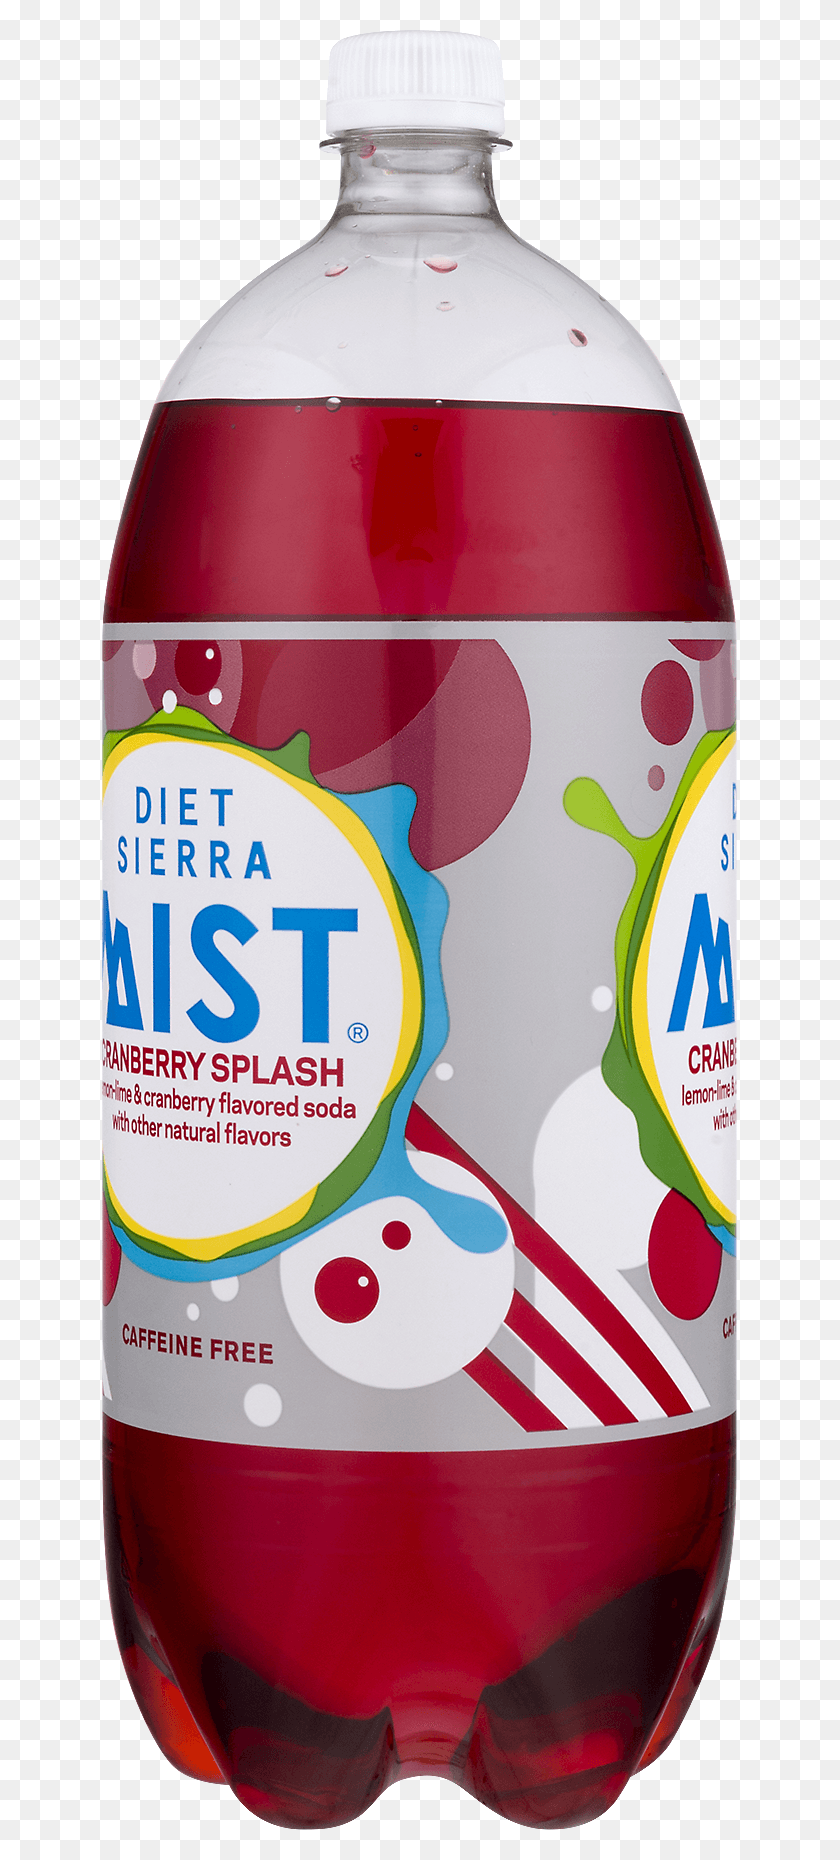 635x1800 Diet Sierra Mist Caffeine Free Gluten Free Cranberry Sierra Mist, Tin, Can, Bottle HD PNG Download